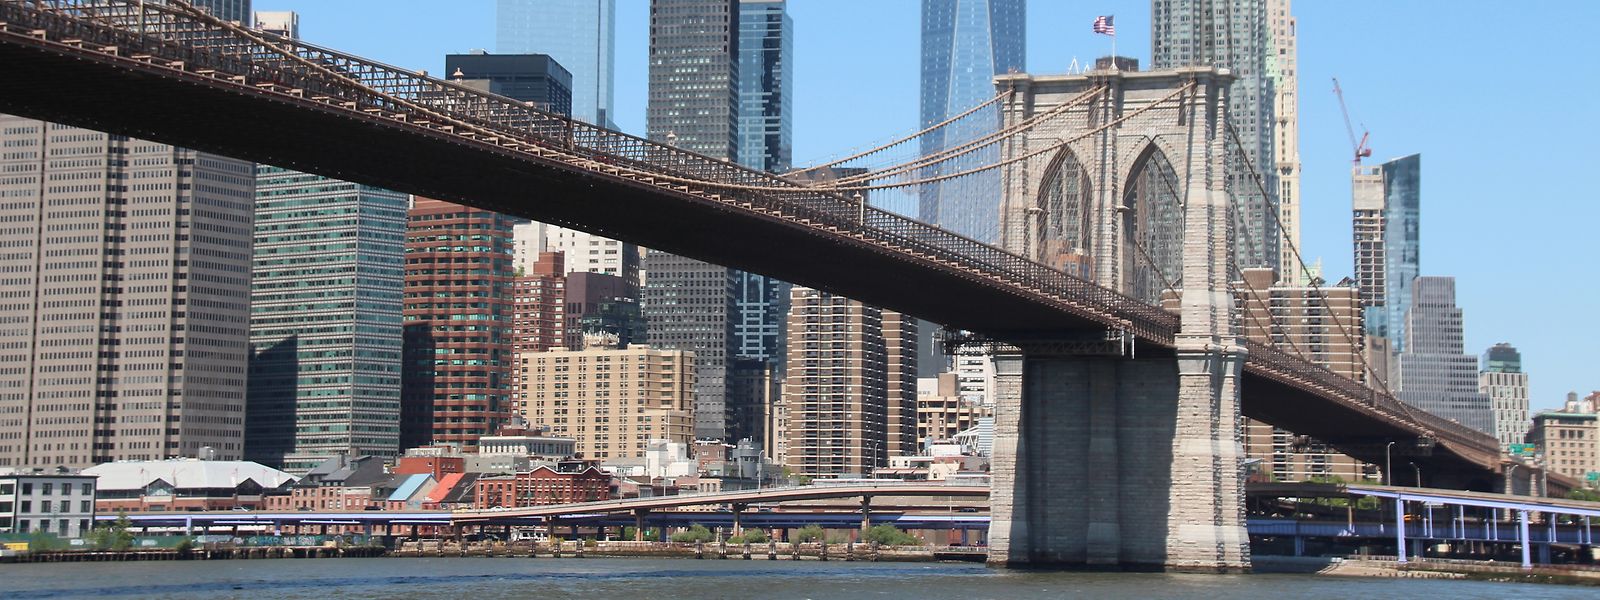 Die 140 Jahre alte Brooklyn Bridge ist eines der berühmtesten Wahrzeichen von New York und zieht jedes Jahr Millionen von Touristen an.